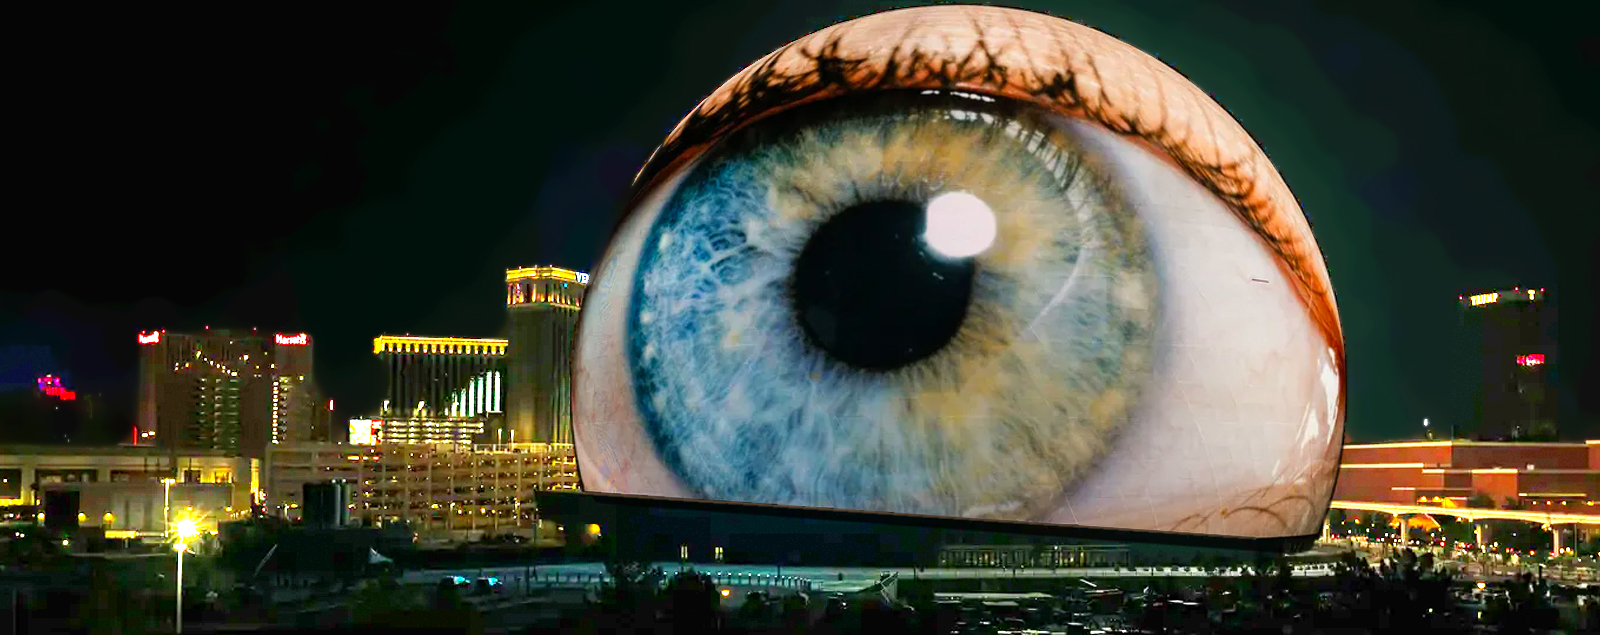 Las Vegas Eye